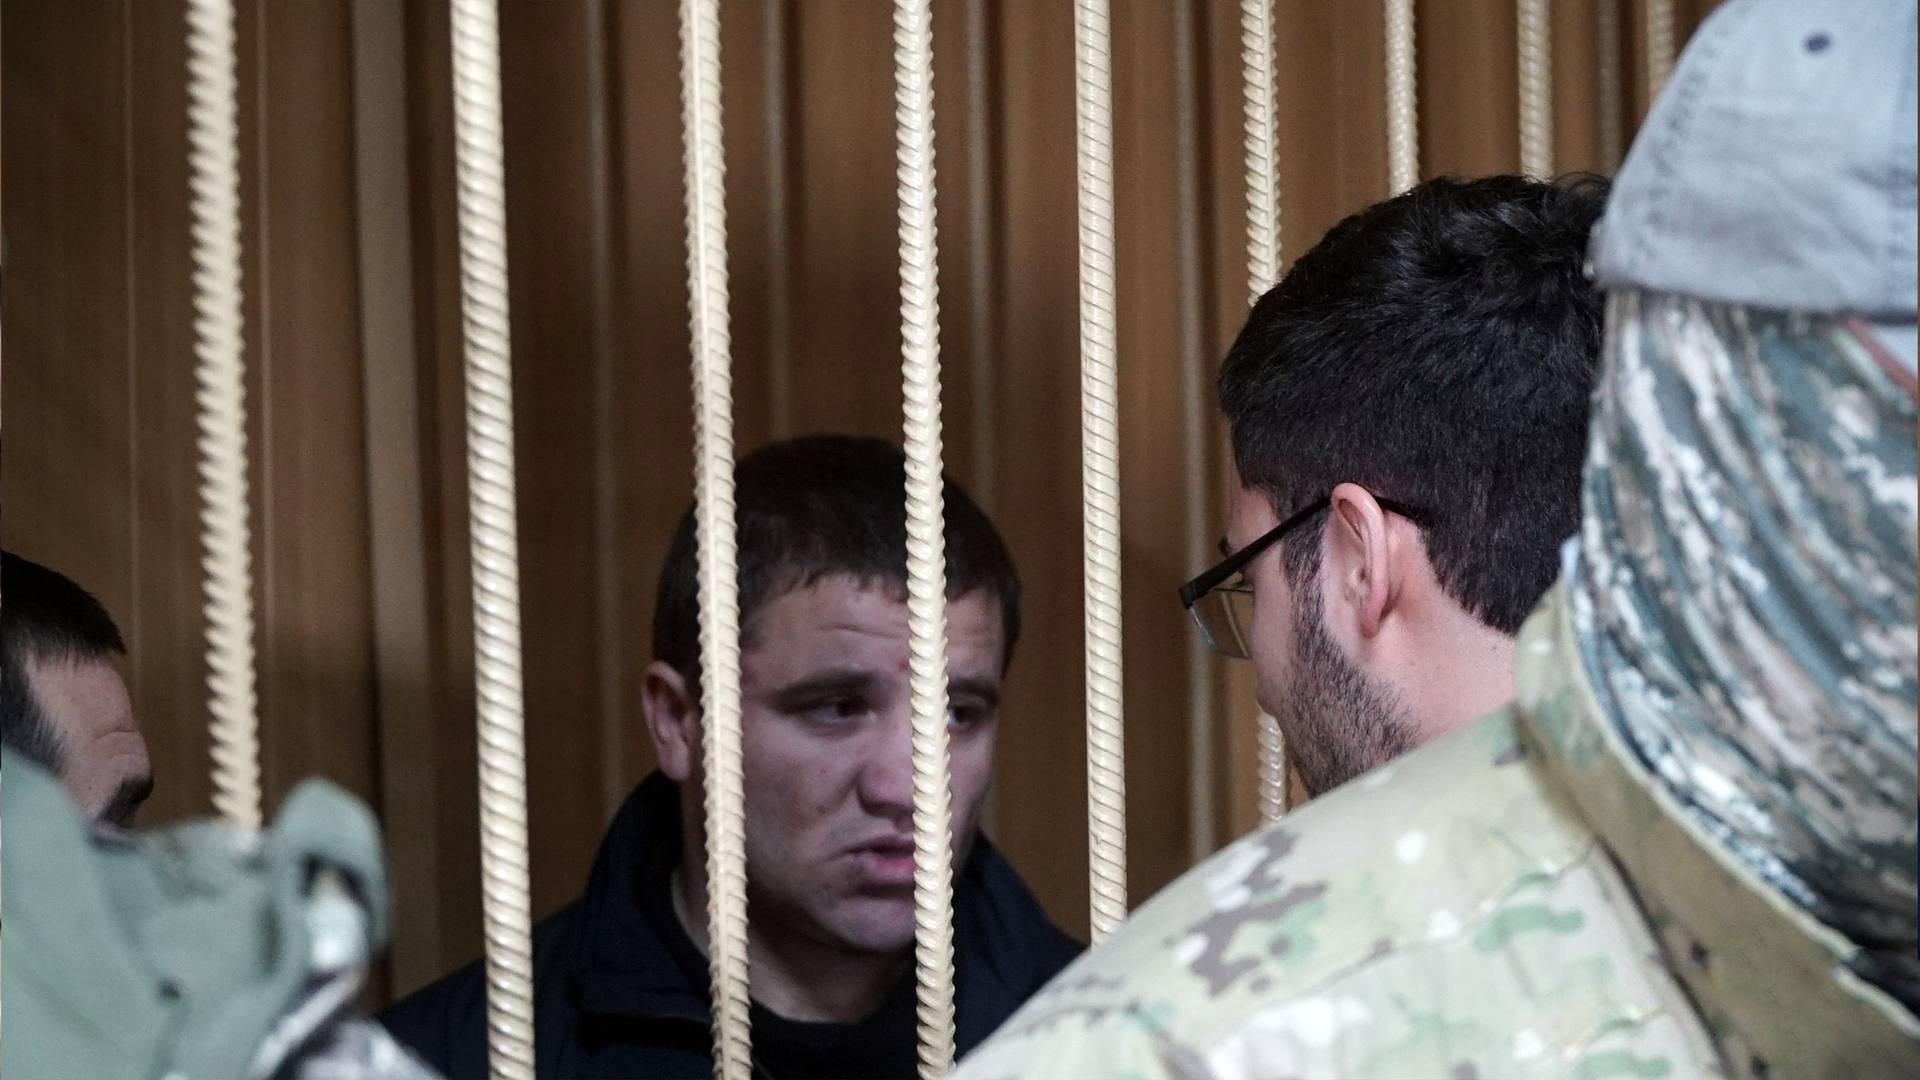 "Измучен, но несокрушим": родные встретились с пленными украинским моряками во время судилища